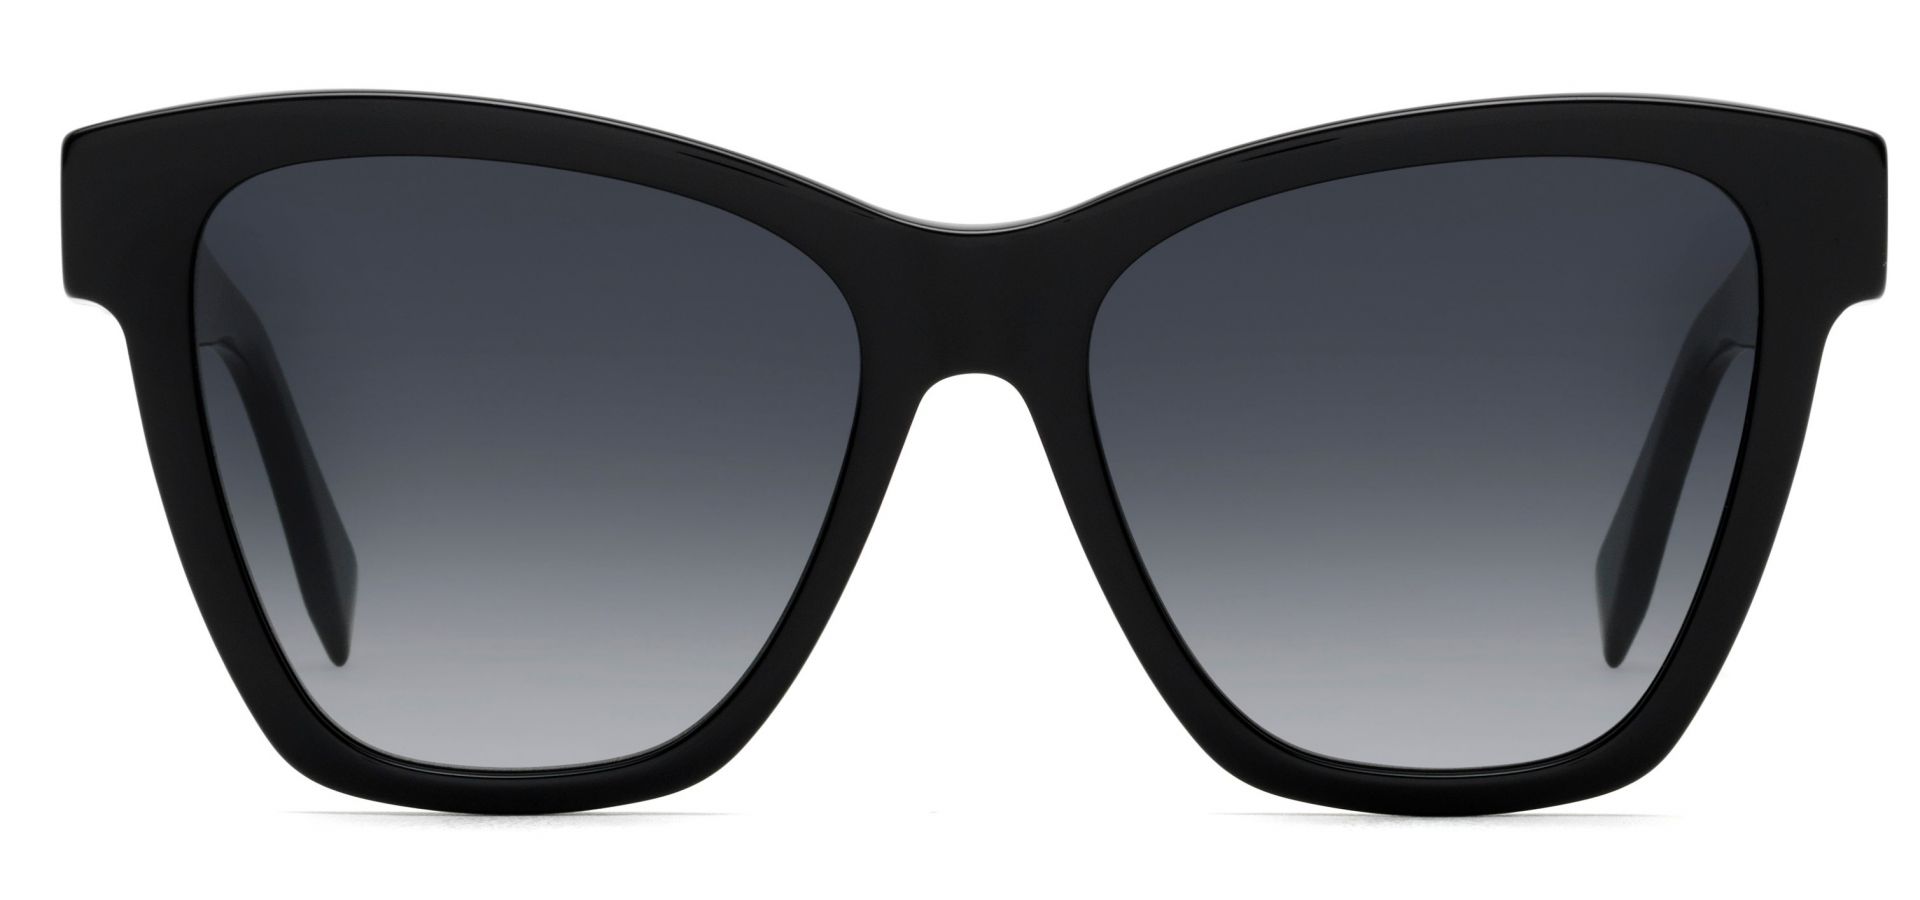 Sunčane naočale Fendi FF 0289/S: Boja: Black, Veličina: 55-17-140, Spol: ženske, Materijal: acetat, Vrsta leće: nepolarizirane